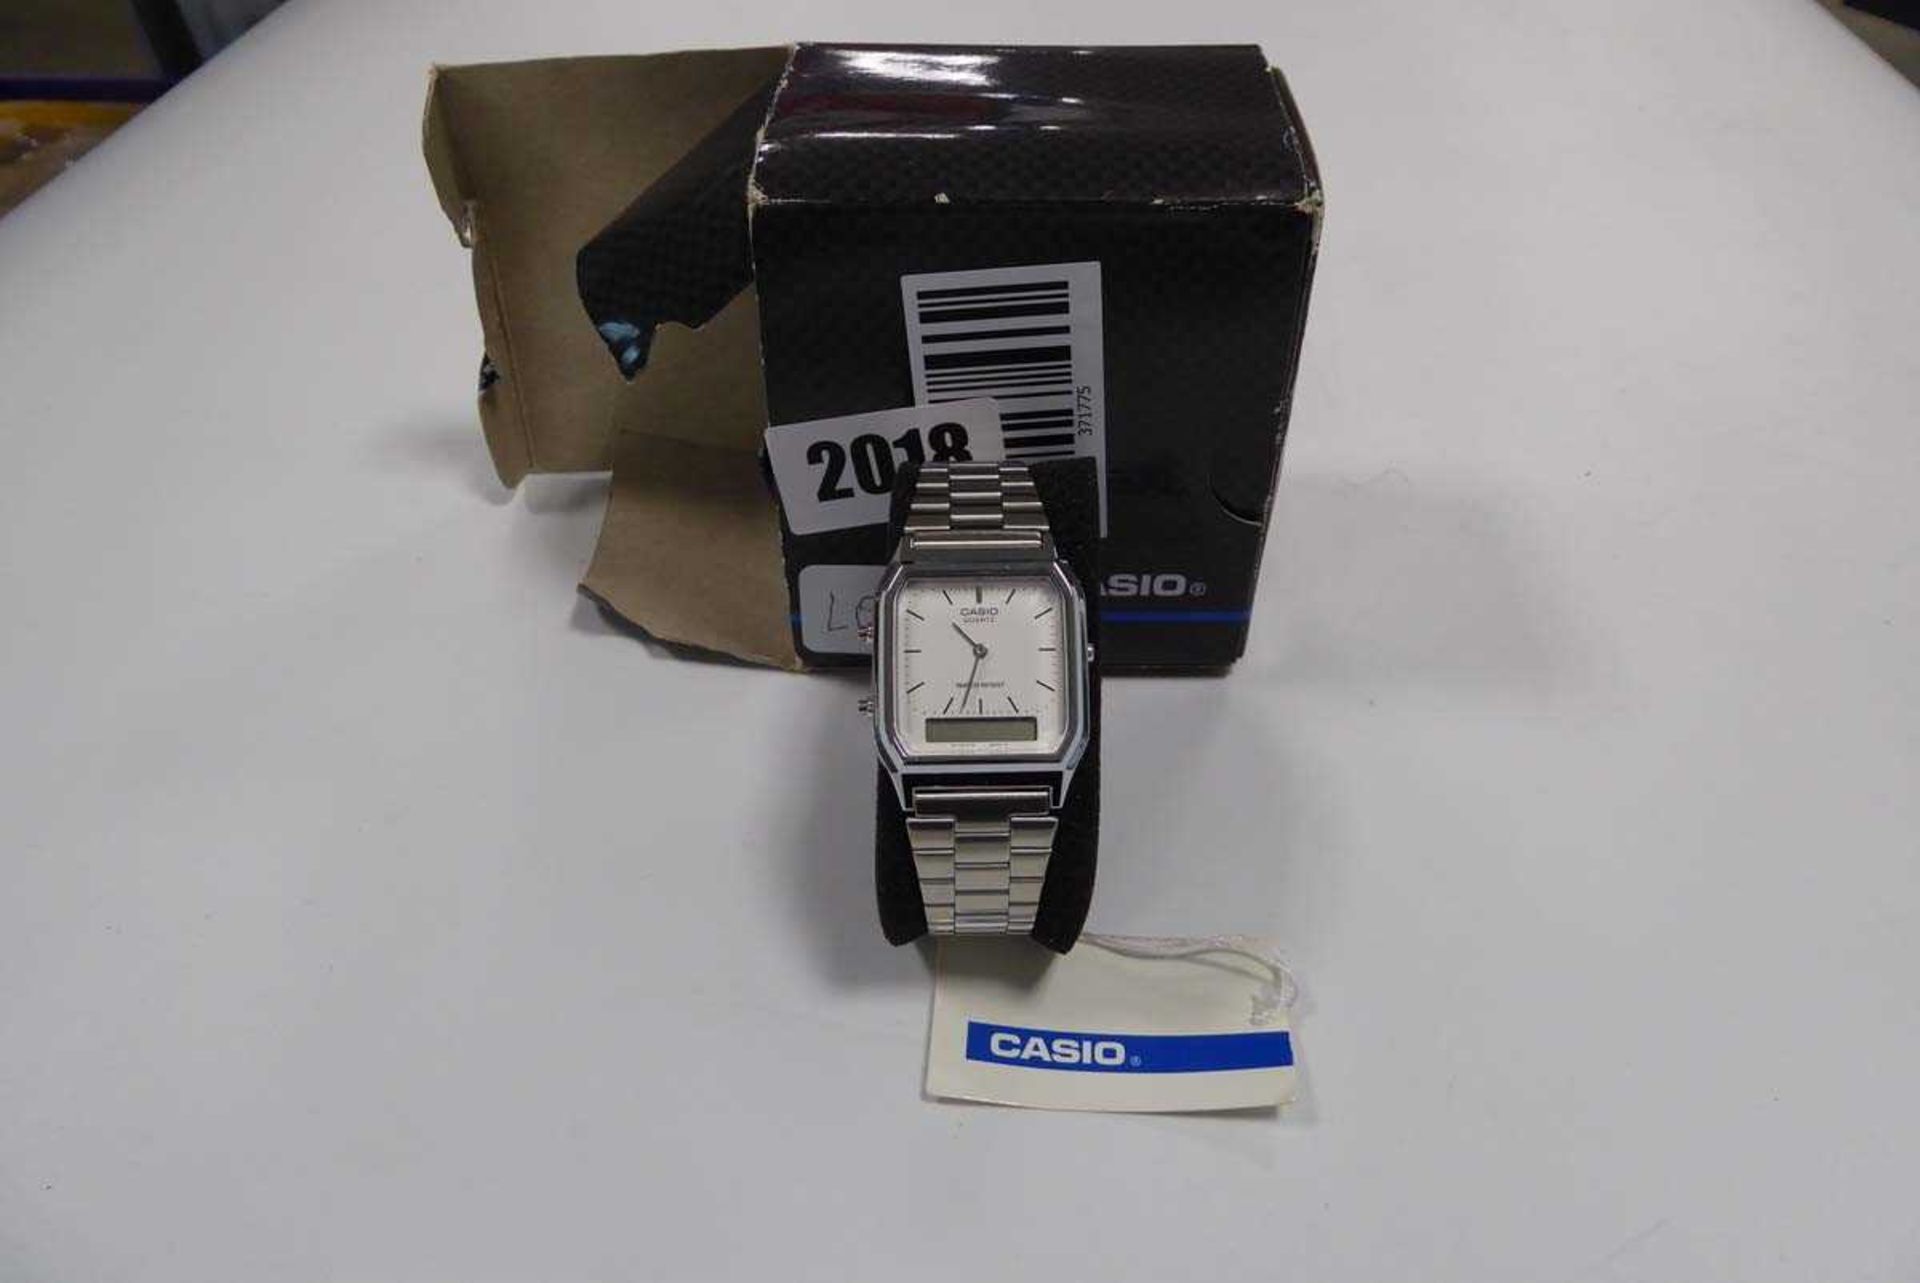 Casio quartz wristwatch with box